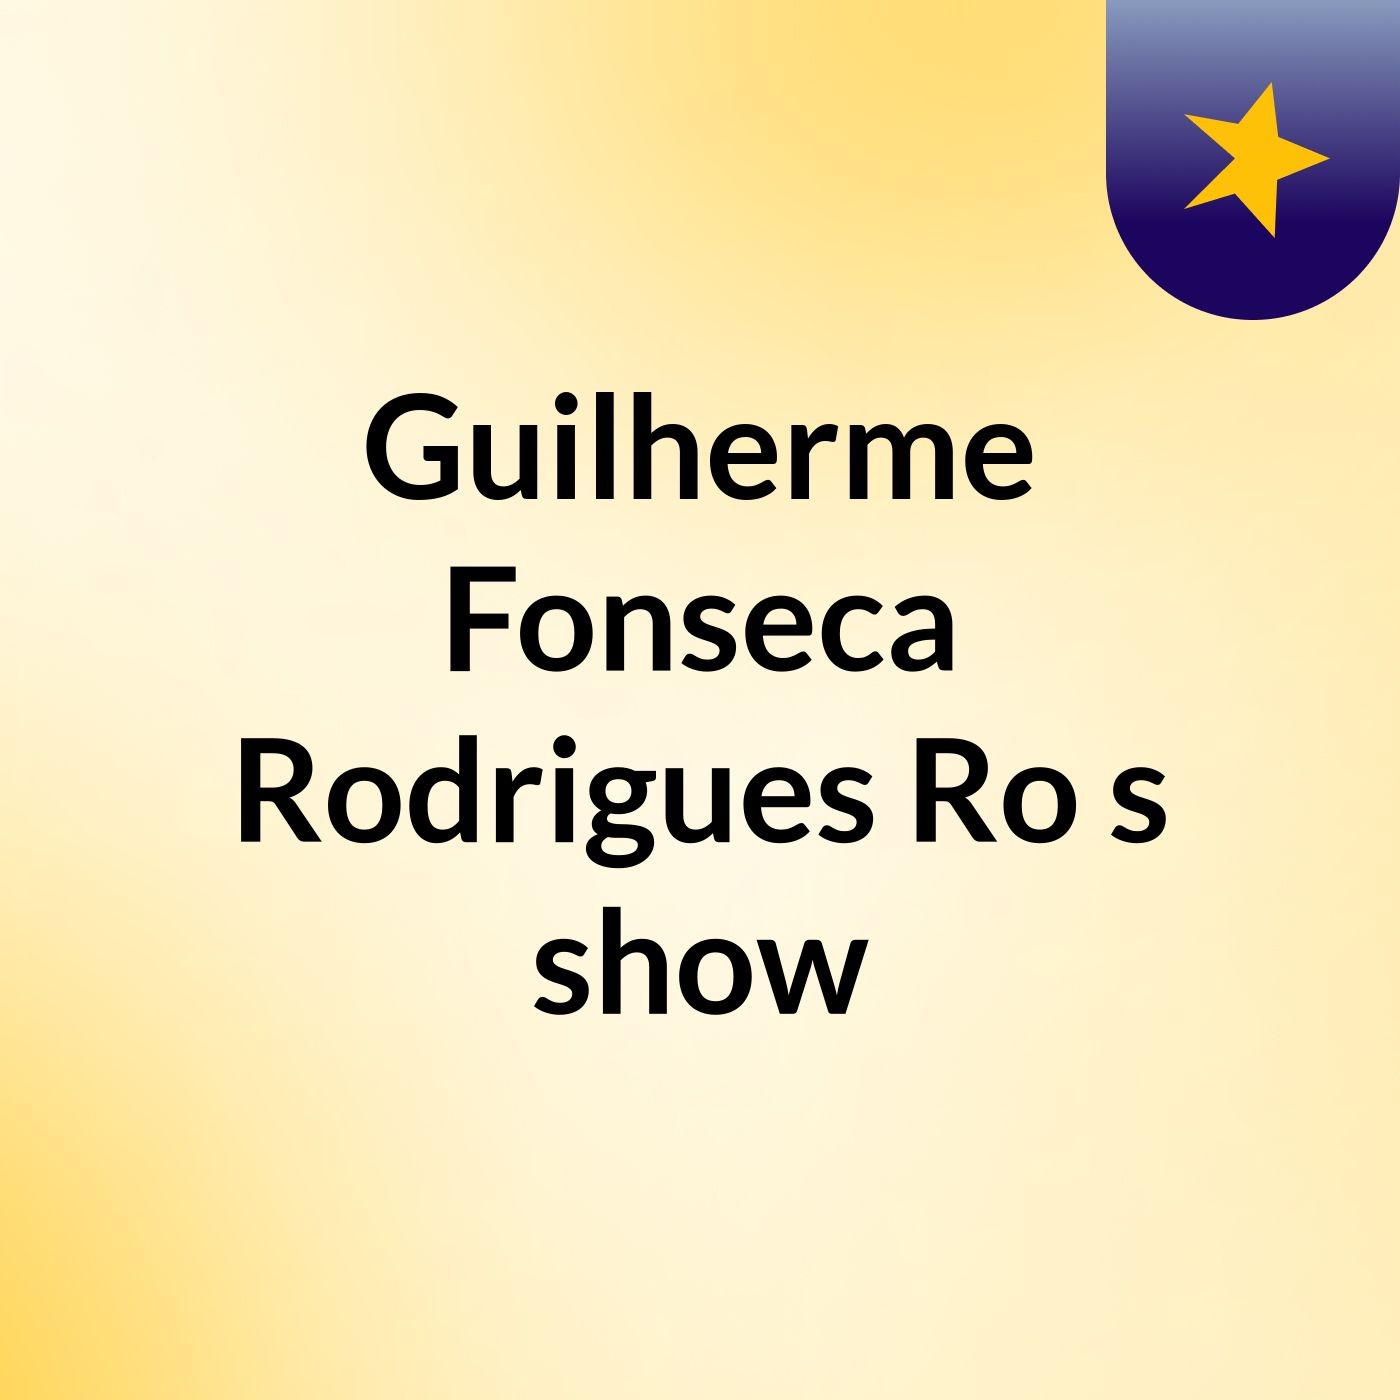 Guilherme Fonseca Rodrigues Ro's show